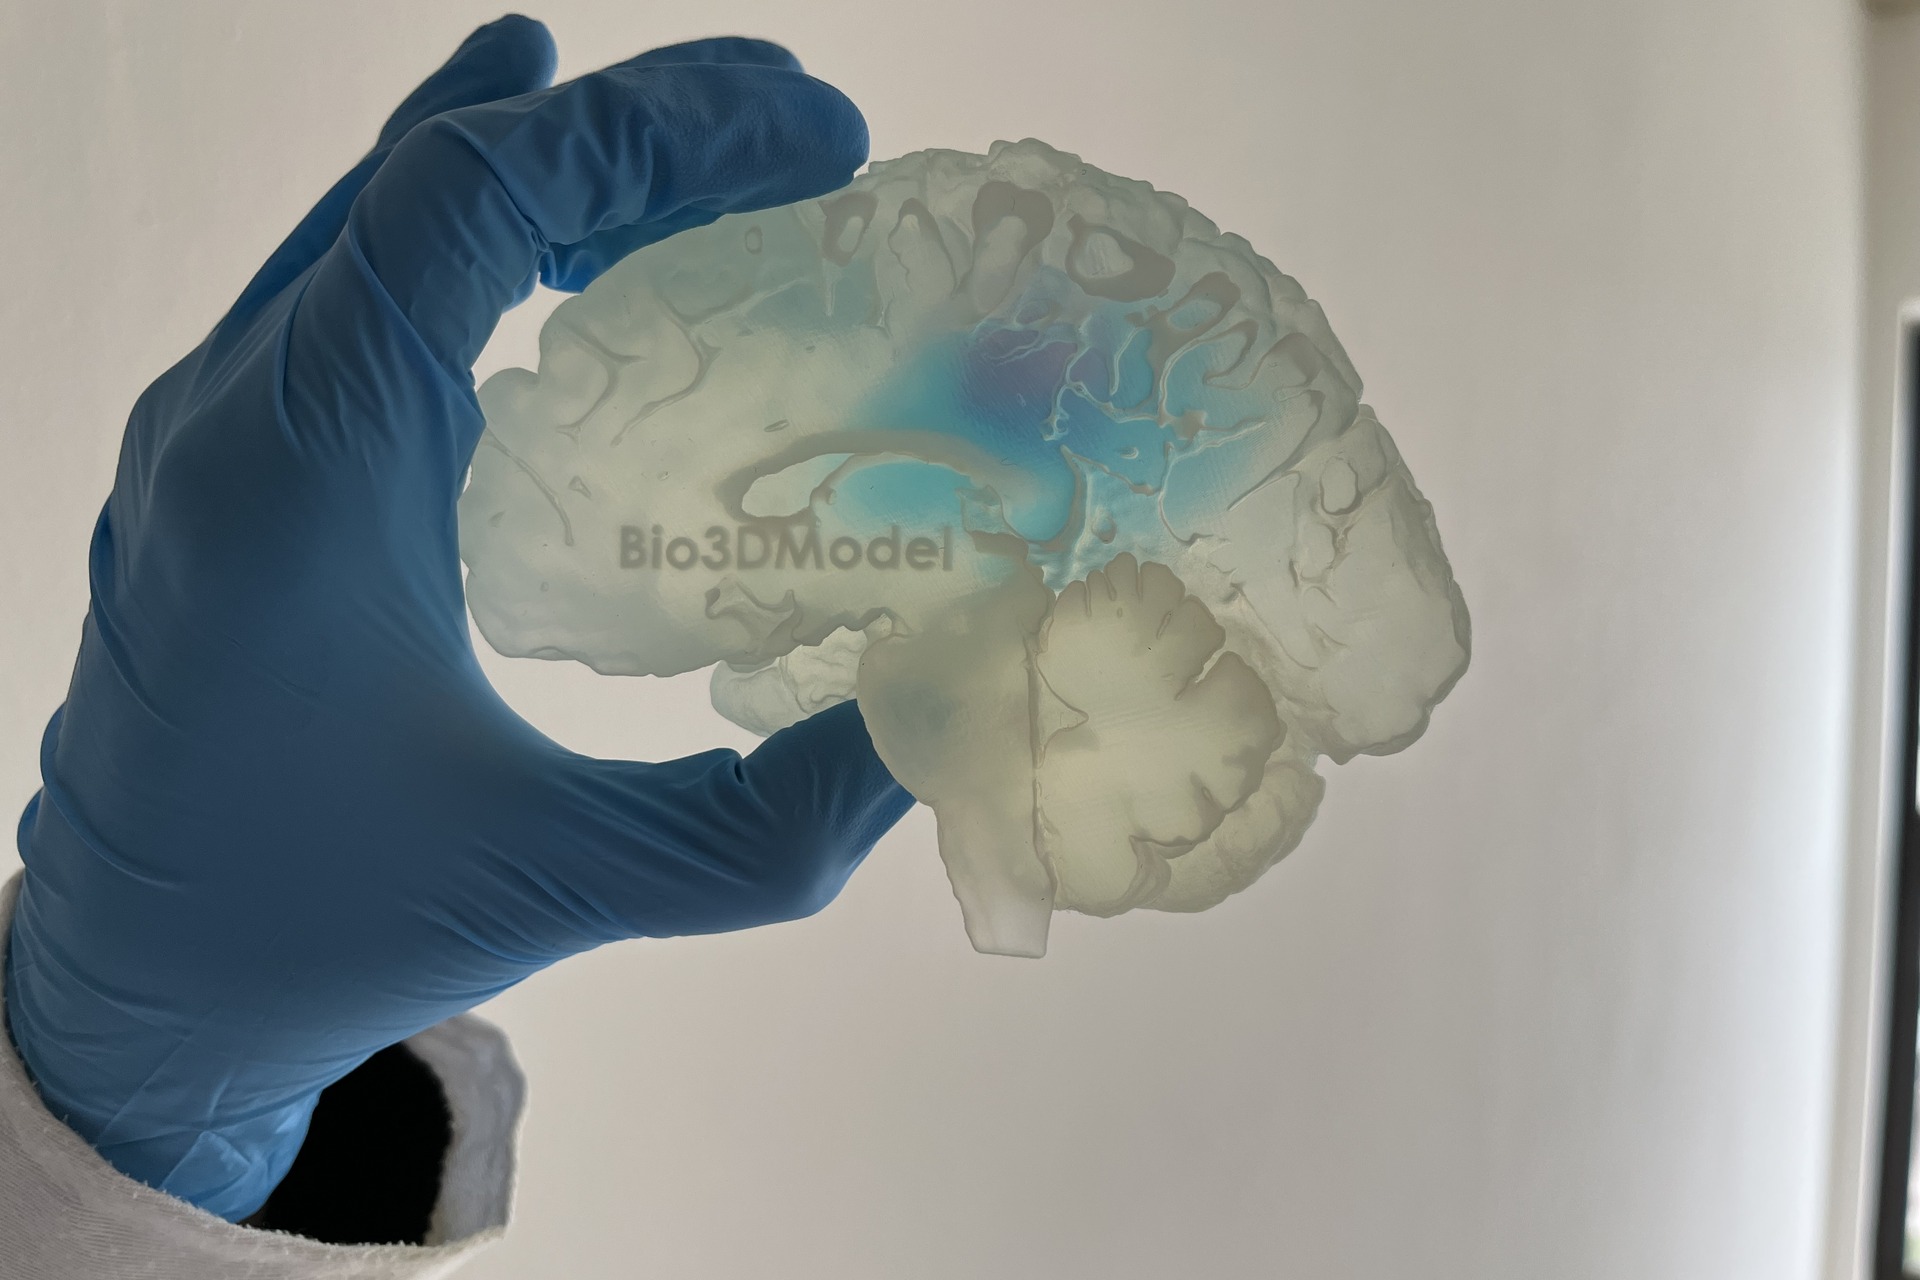 Ludzki mózg: reprodukcja mózgu dotkniętego przerzutami i wydrukowana w 3D przez włoską firmę Bio3DModel